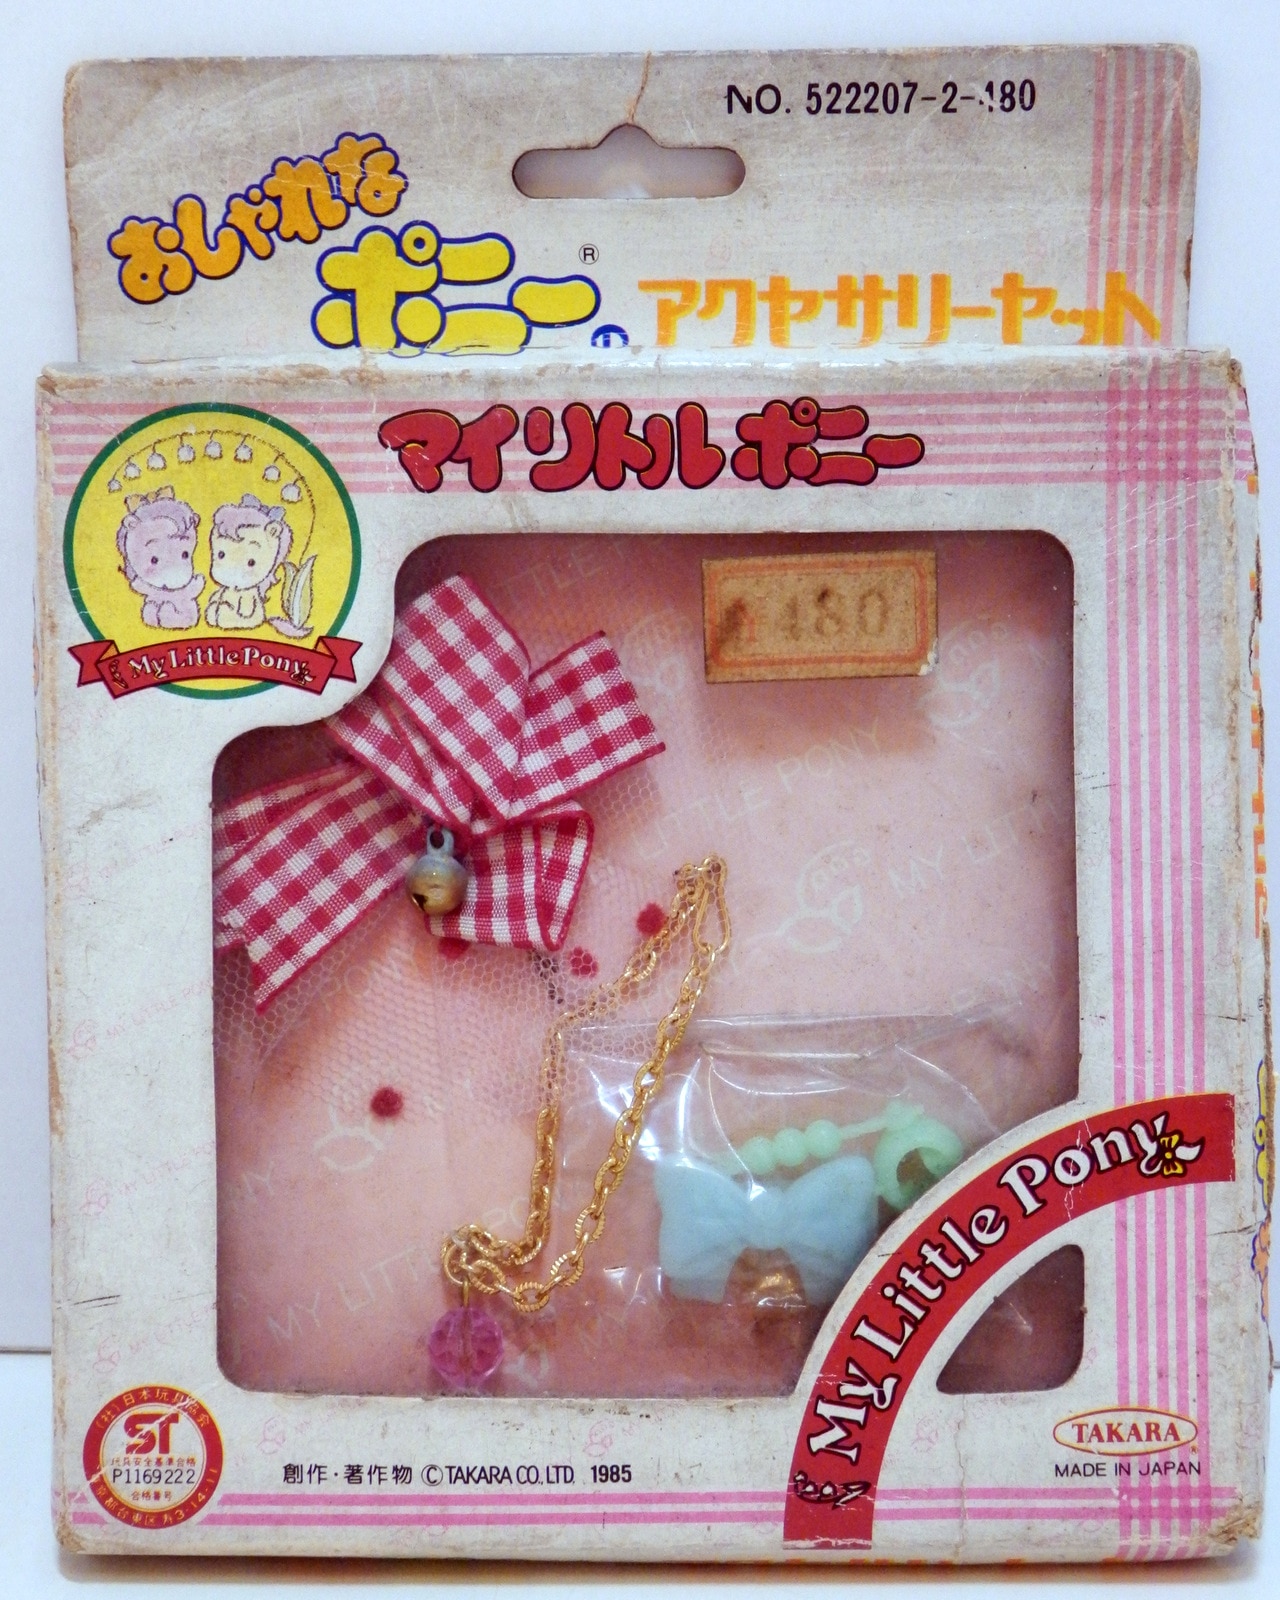 昭和 タカラ おしゃれなポニー マイリトルポニー 人形 ドール ピンク 